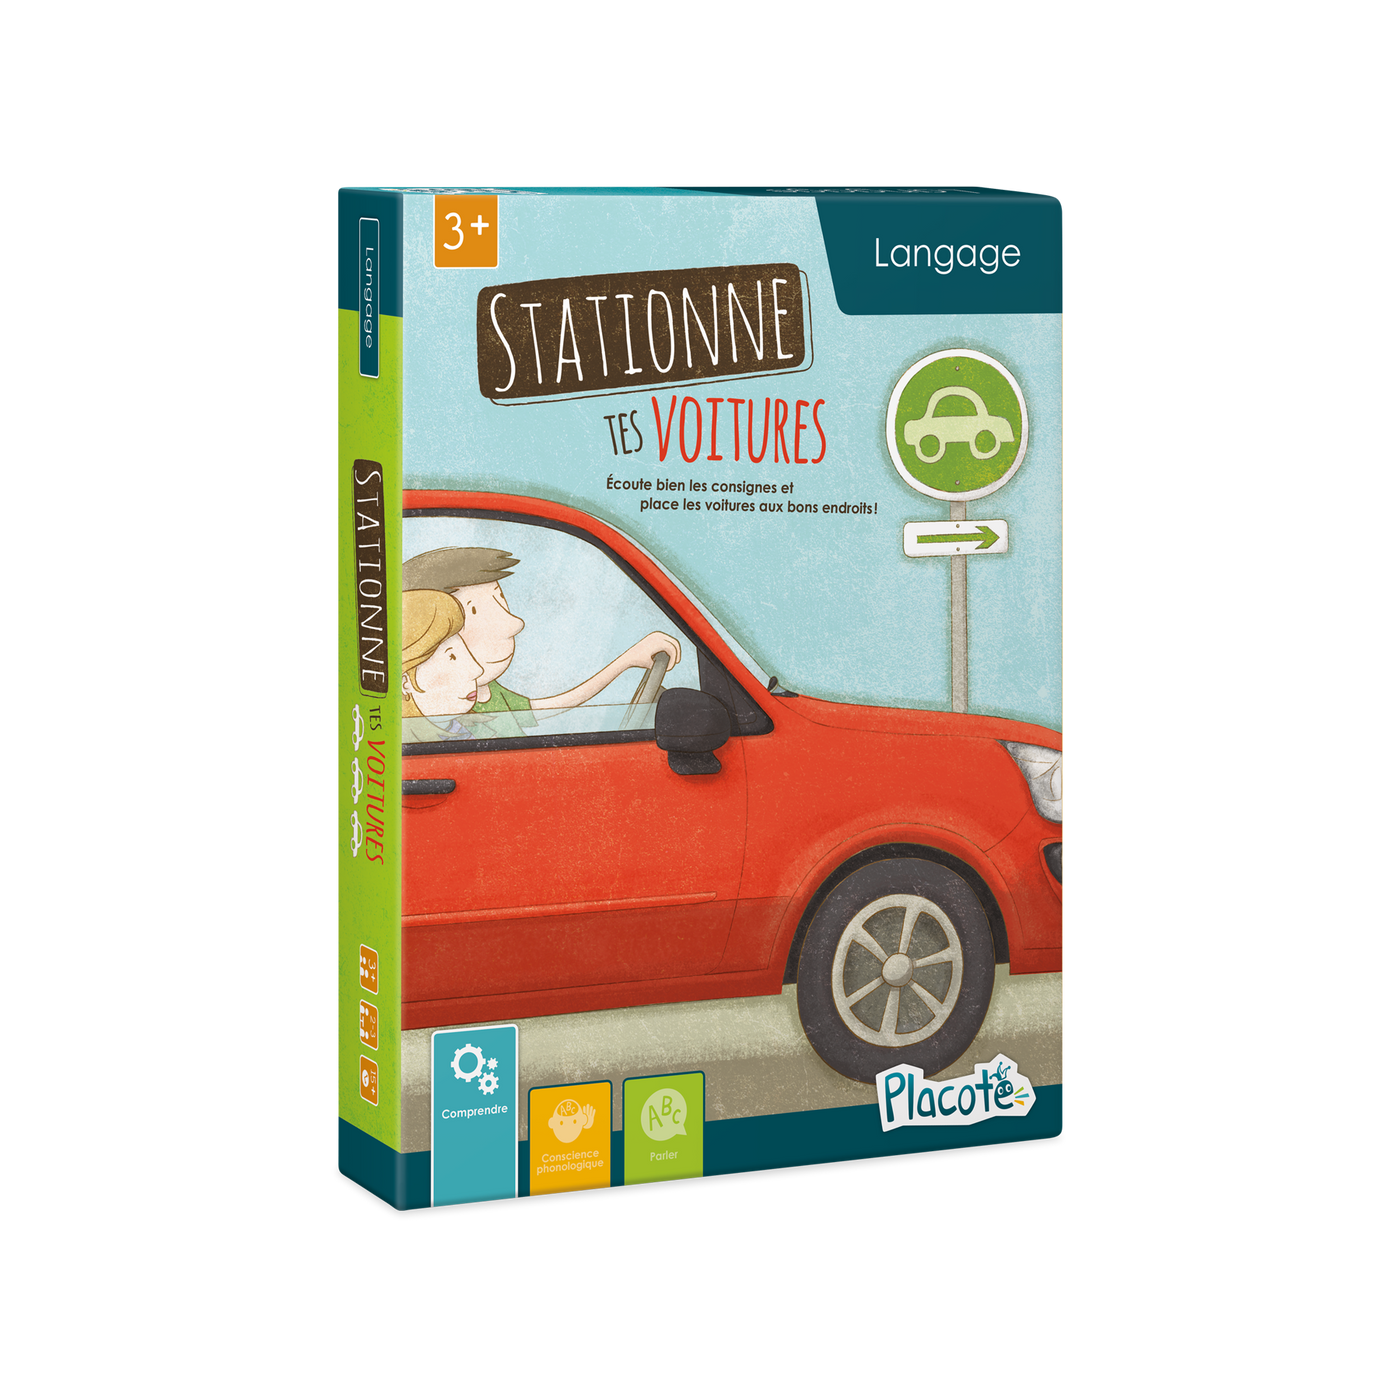 Stationne tes voitures - Devant de la boite du jeu, illustrant 2 personnes dans une voiture et un panneau de stationnement